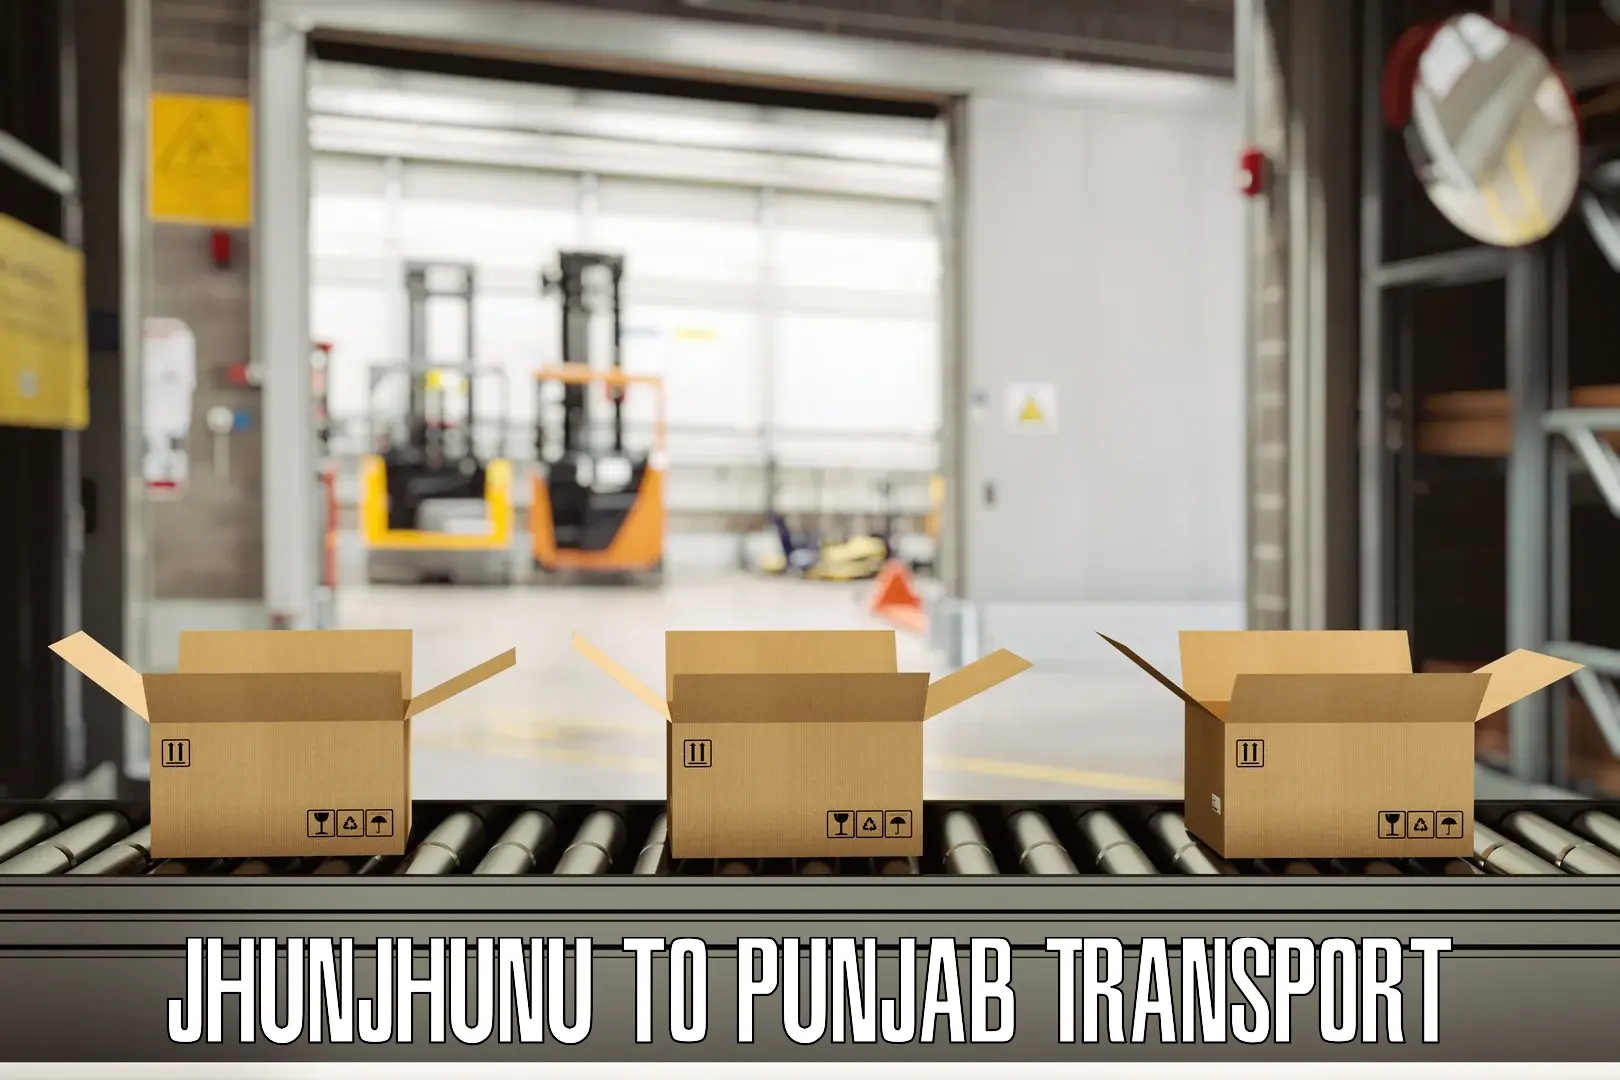 Nearby transport service Jhunjhunu to Punjab